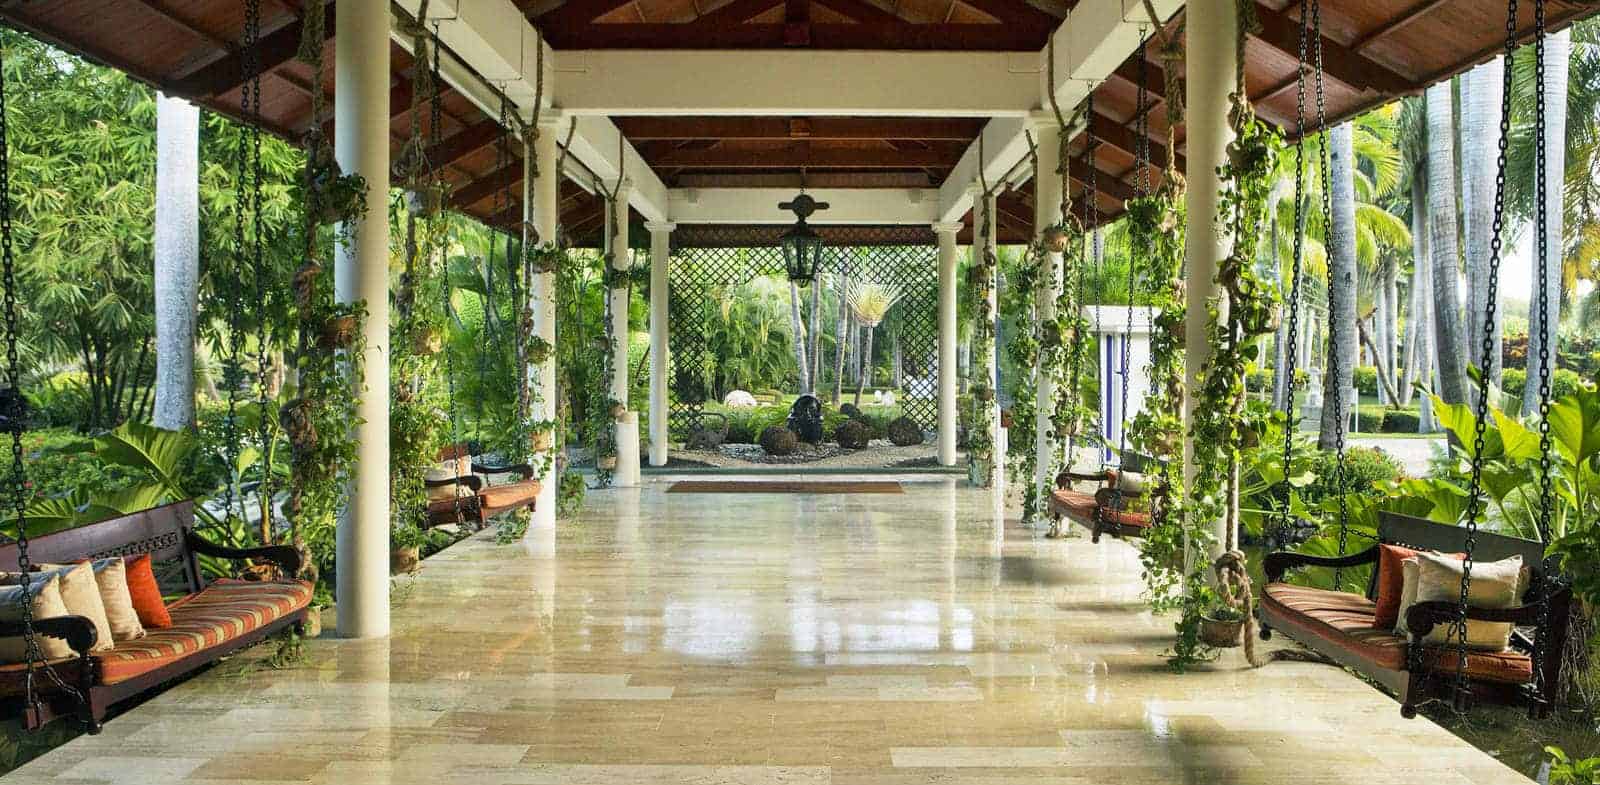 Melia Paradisus Resort in the Dominican Republic